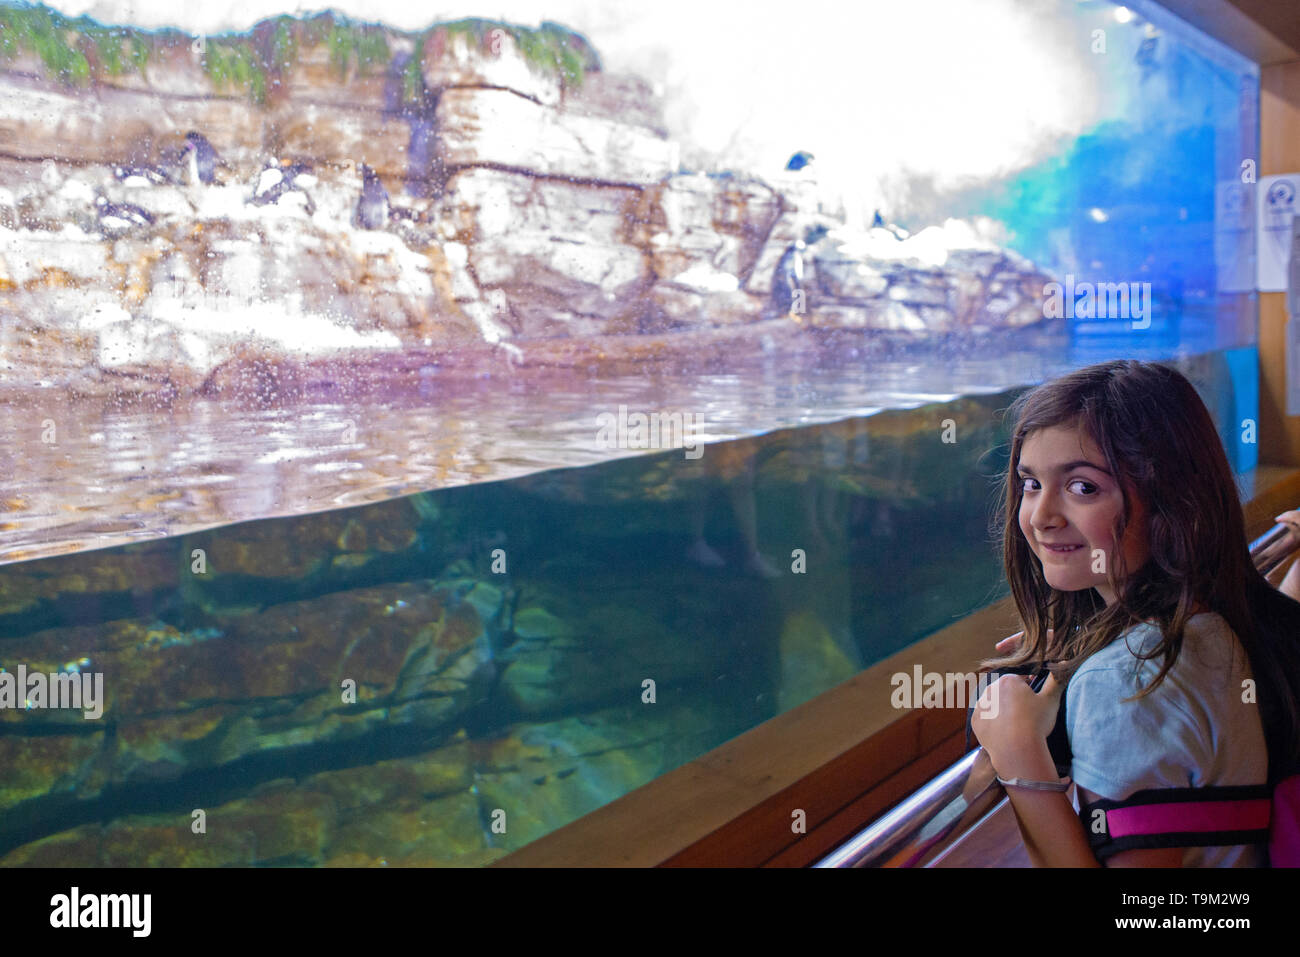 Das kaukasische Kind ist glücklich und begeistert im Aquarium von Valencia Beim Blick auf Pinguine Stockfoto